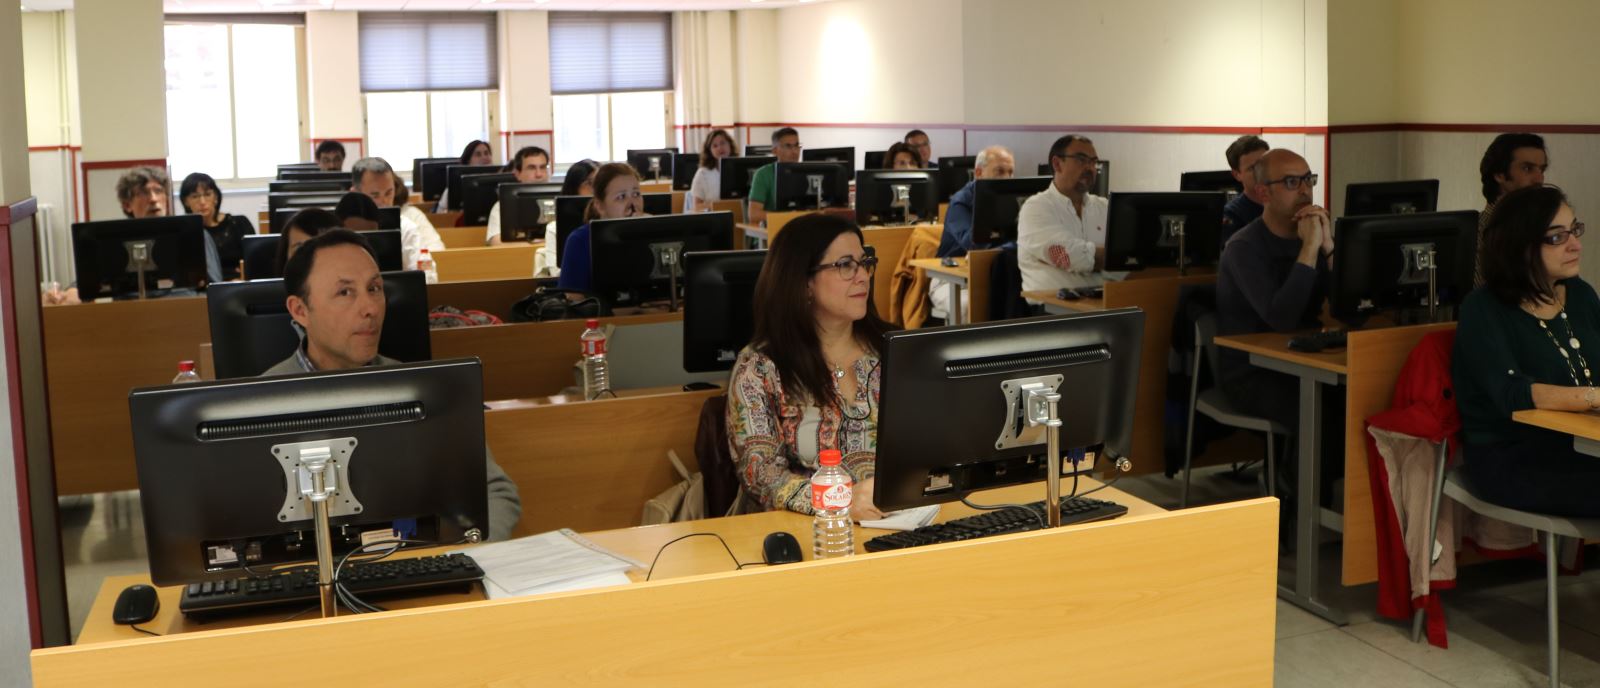 La UNE organiza un curso-taller sobre marketing editorial para sus asociados